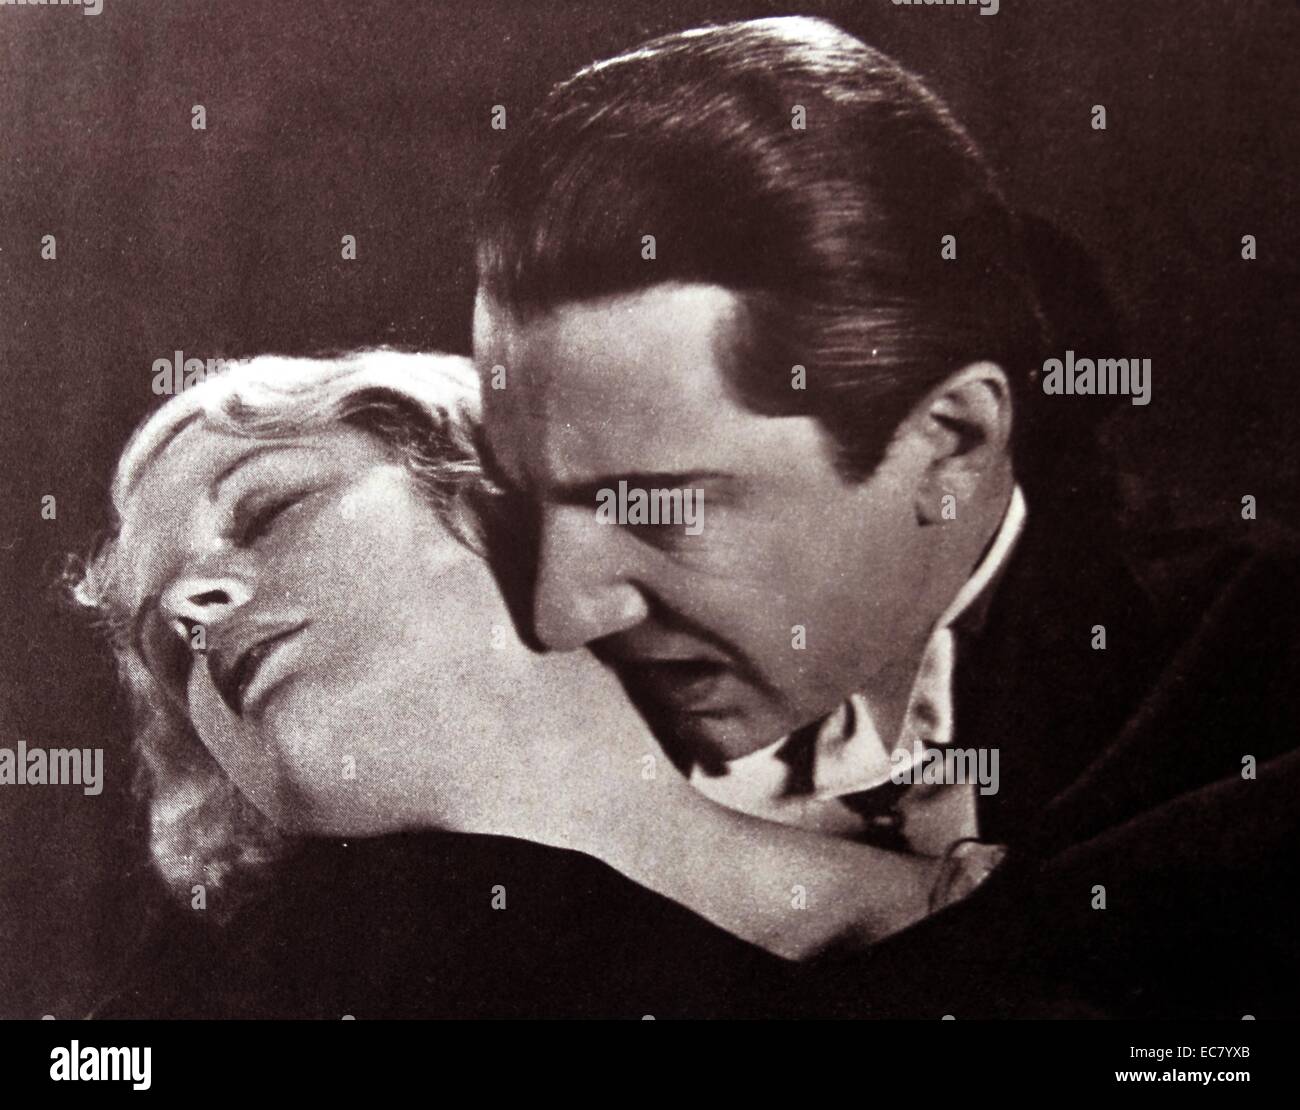 Dracula, 1931, Bela Lugosi, wie der Vampir ist nicht eine Abbildung in der Maskerade, aber ein Freund, der wirklich das Blut von Menschen saugt, in diesem Fall Helen Chandler. Stockfoto